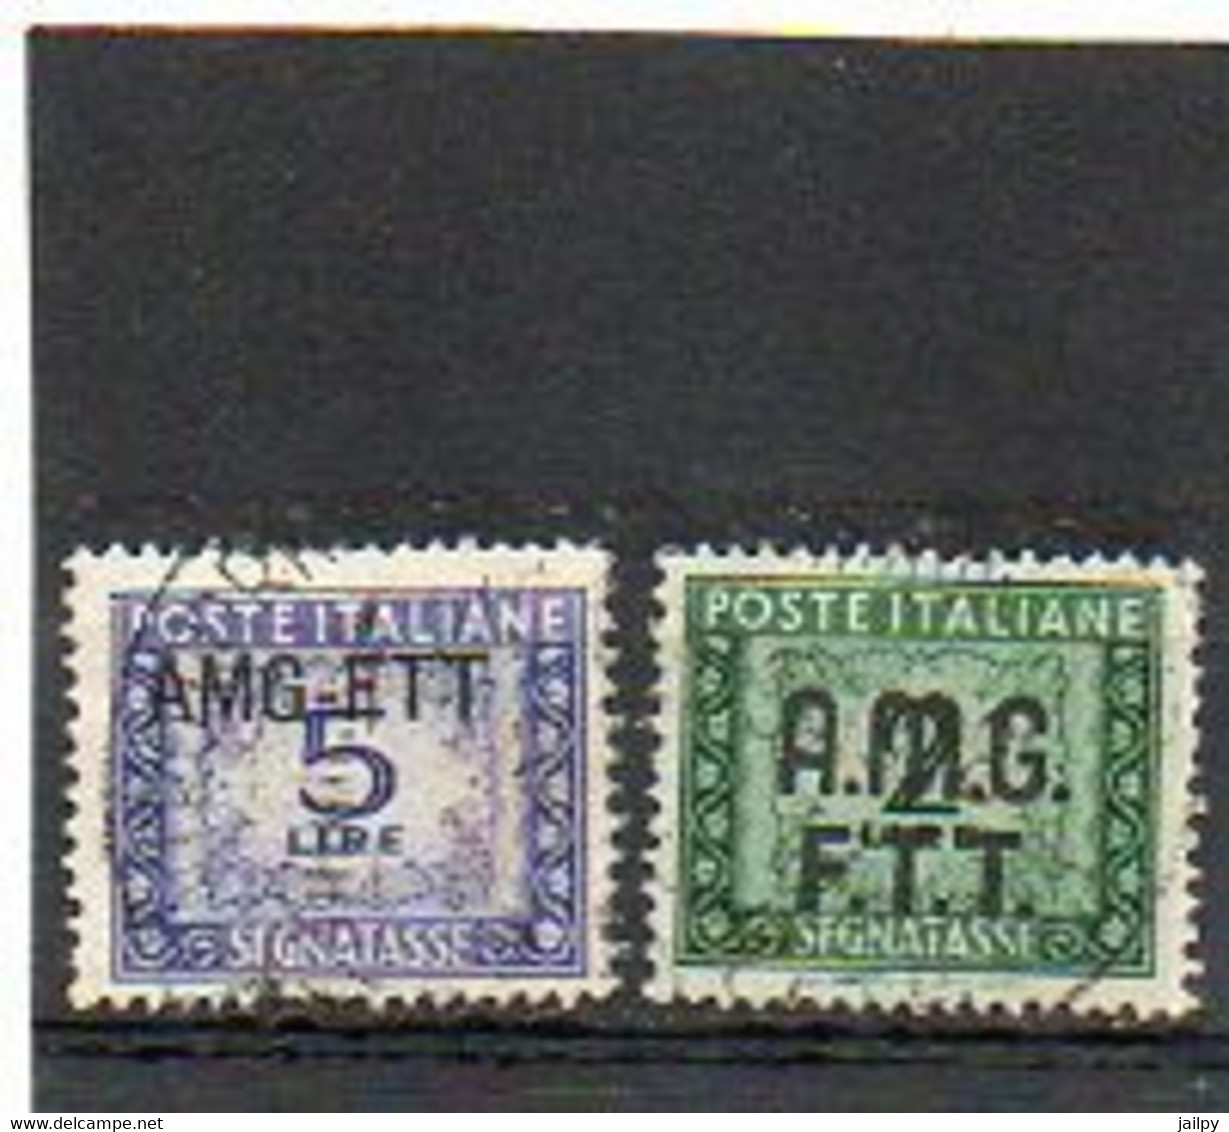 ITALIE   TRIESTE   AMG FTT    2 Timbres Taxe    2 Et 5  Lire   1947   Oblitérés - Postage Due